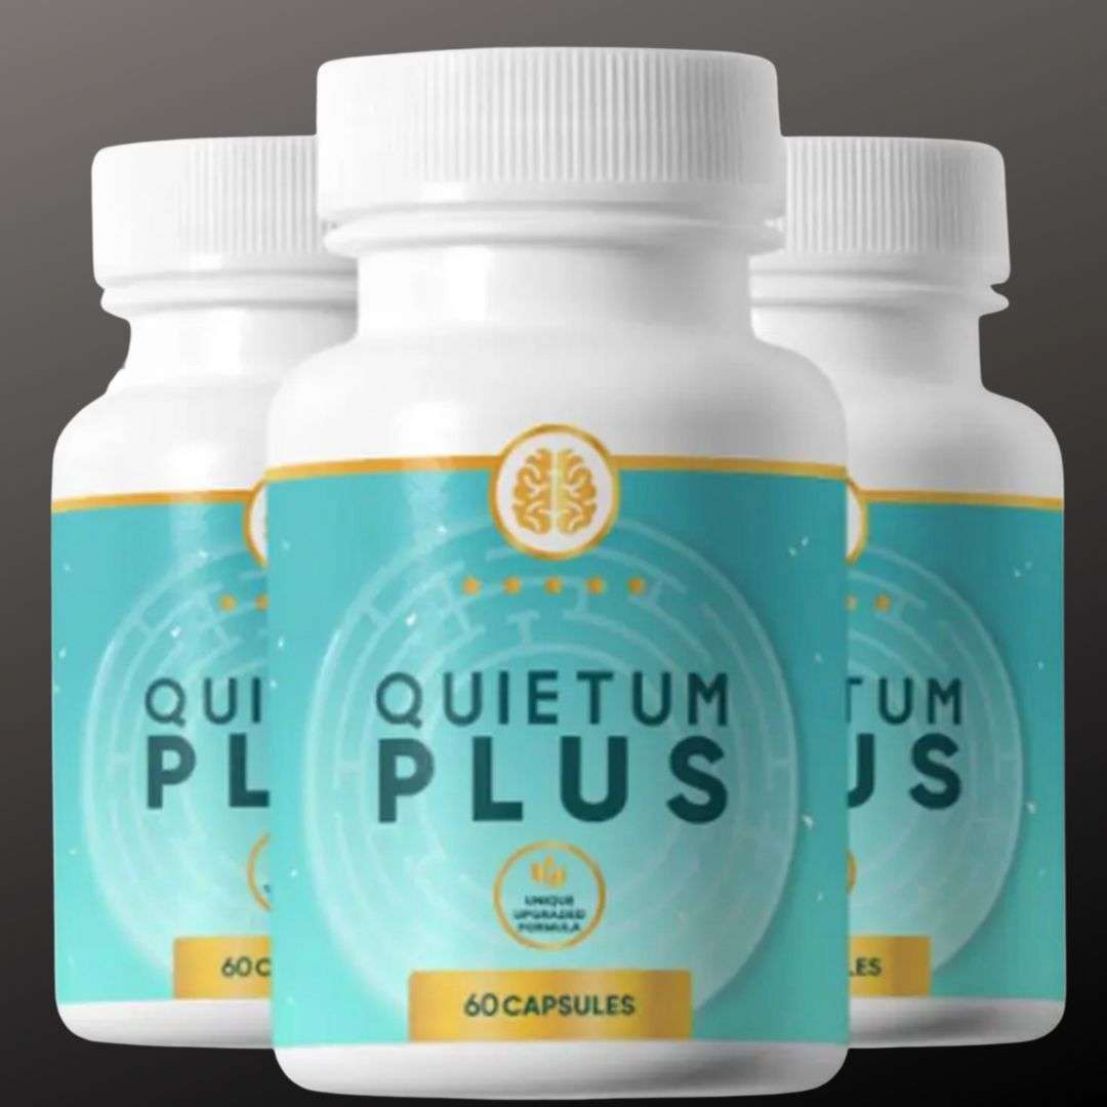 Quietum Plus Tinnitus Review